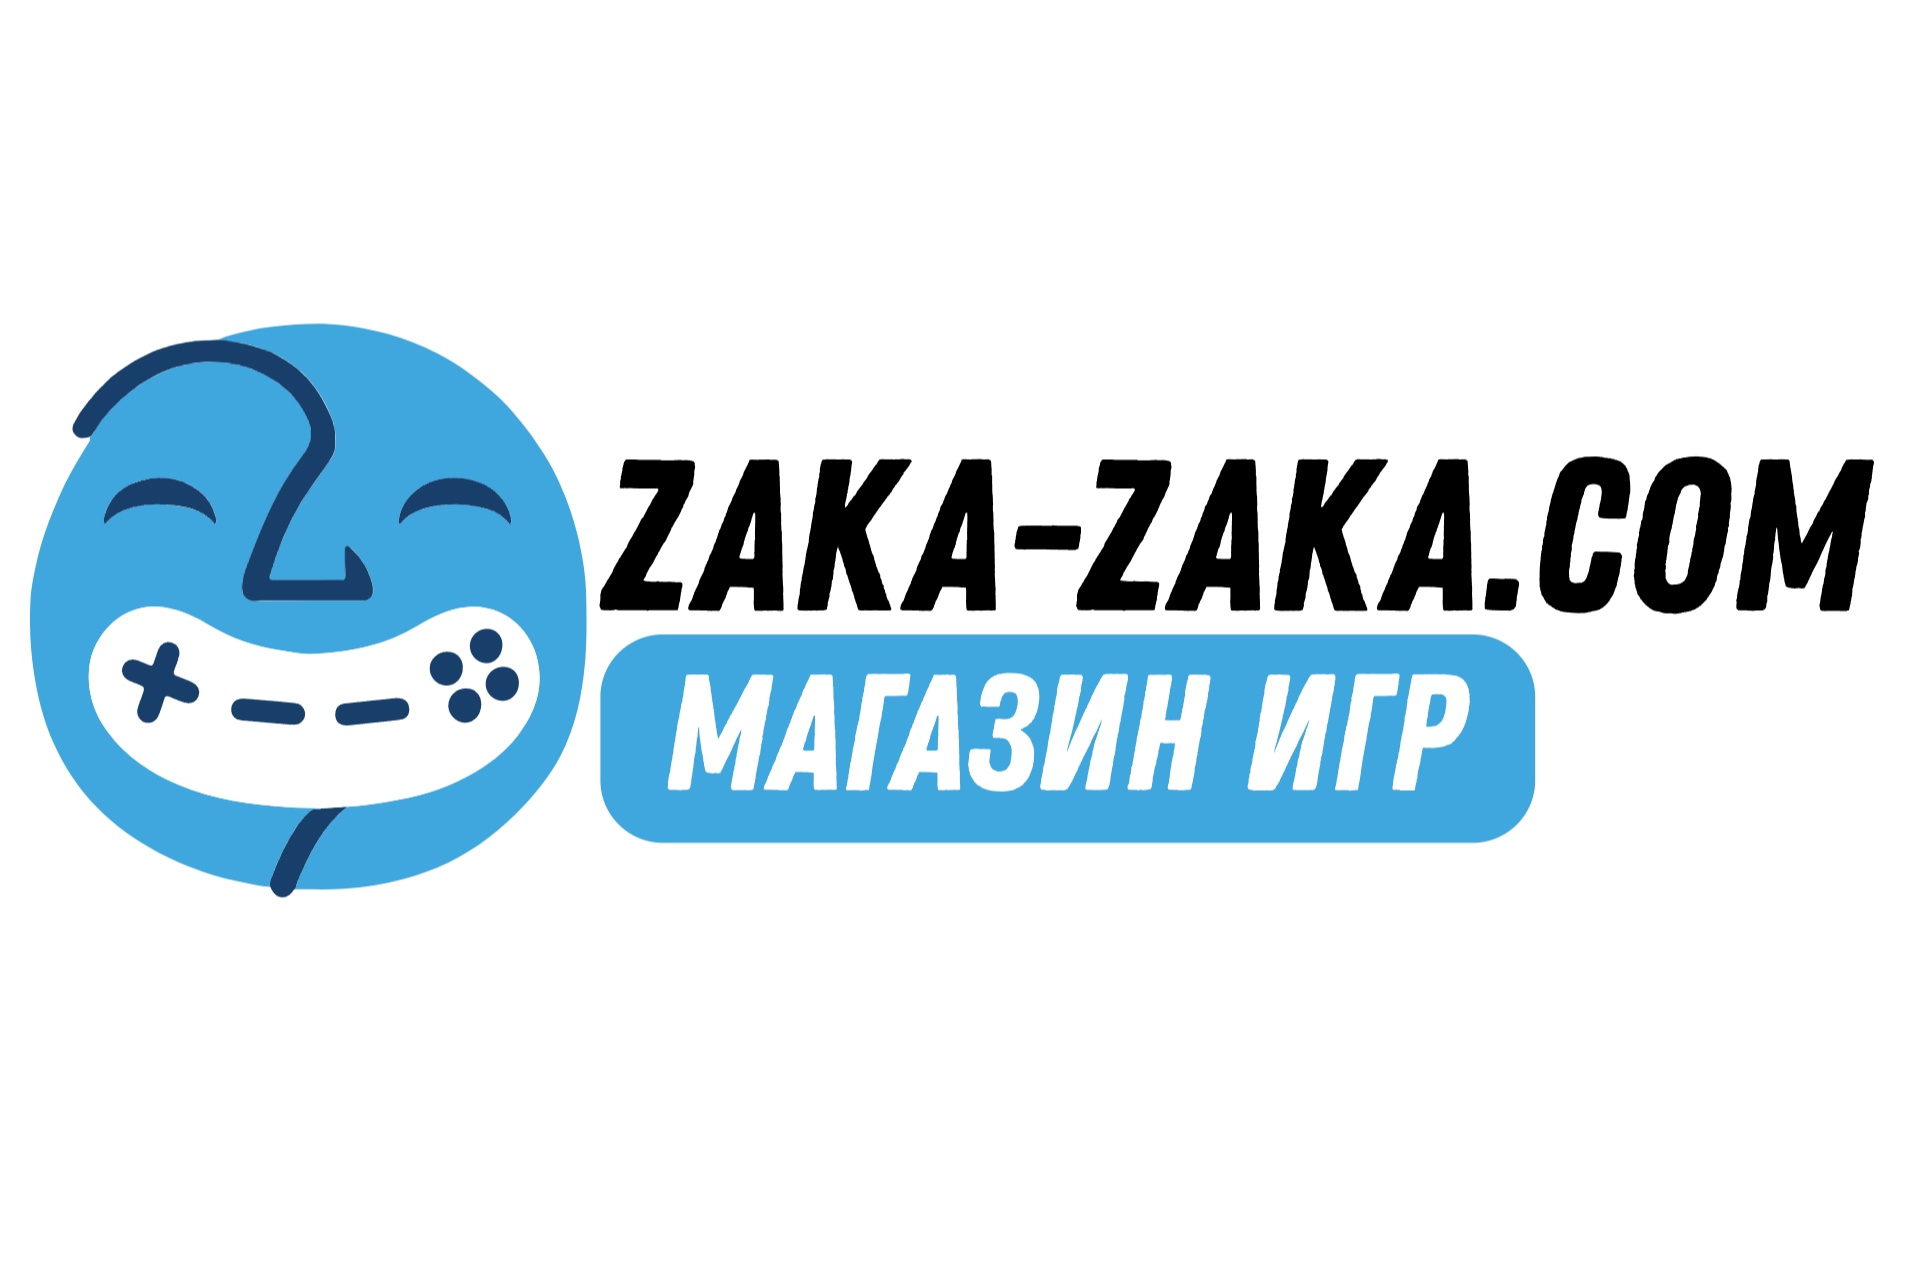 Zaka - zaka